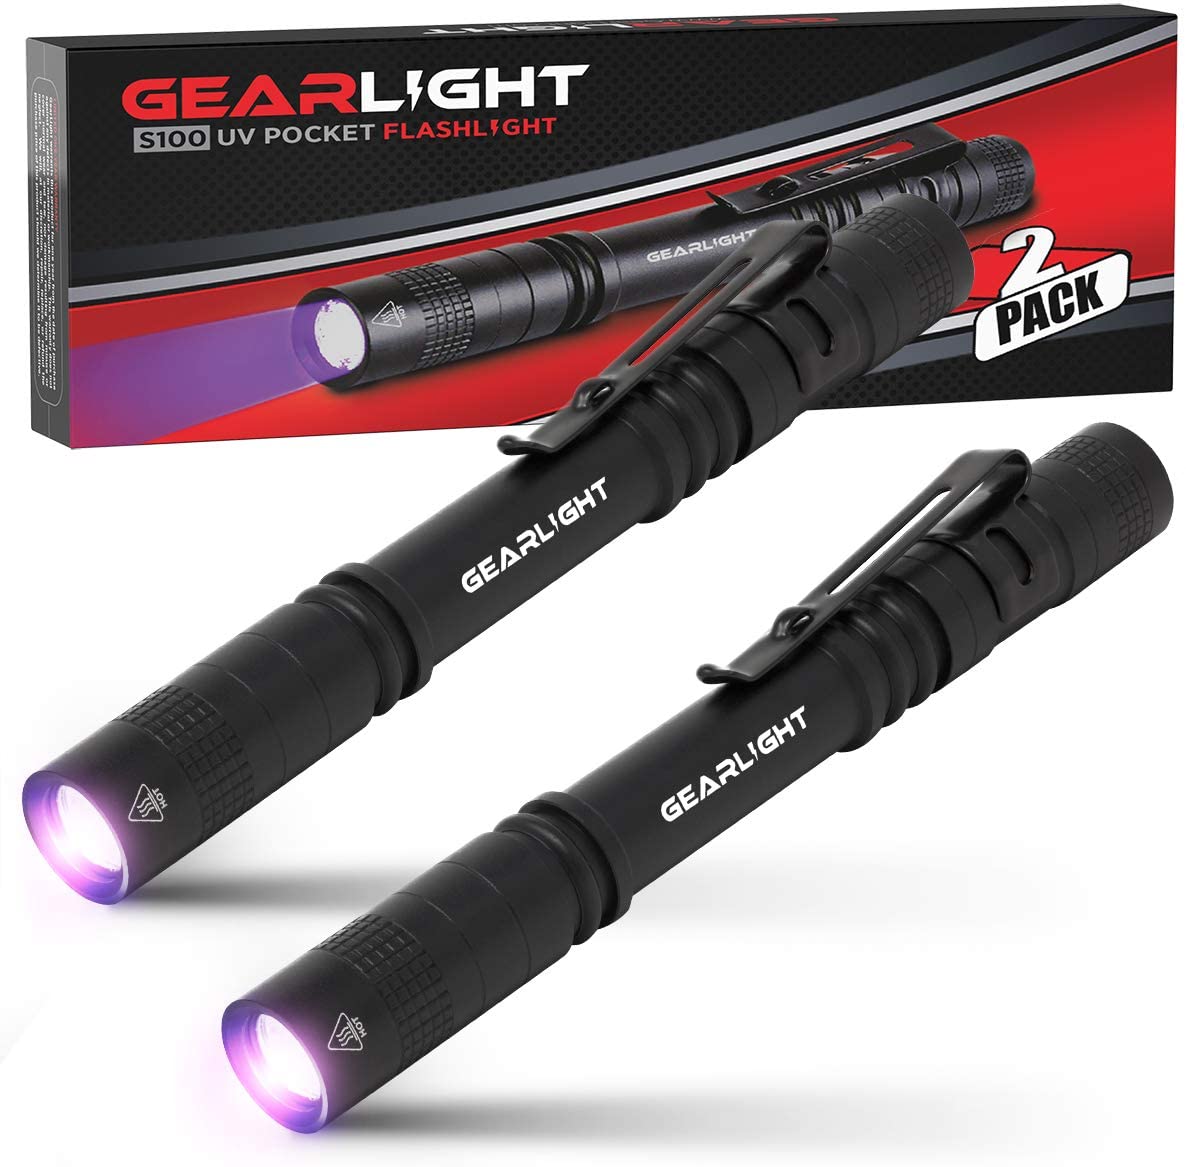 GearLight Portable Pen Flashlight S100 UV Light, 2-Pack